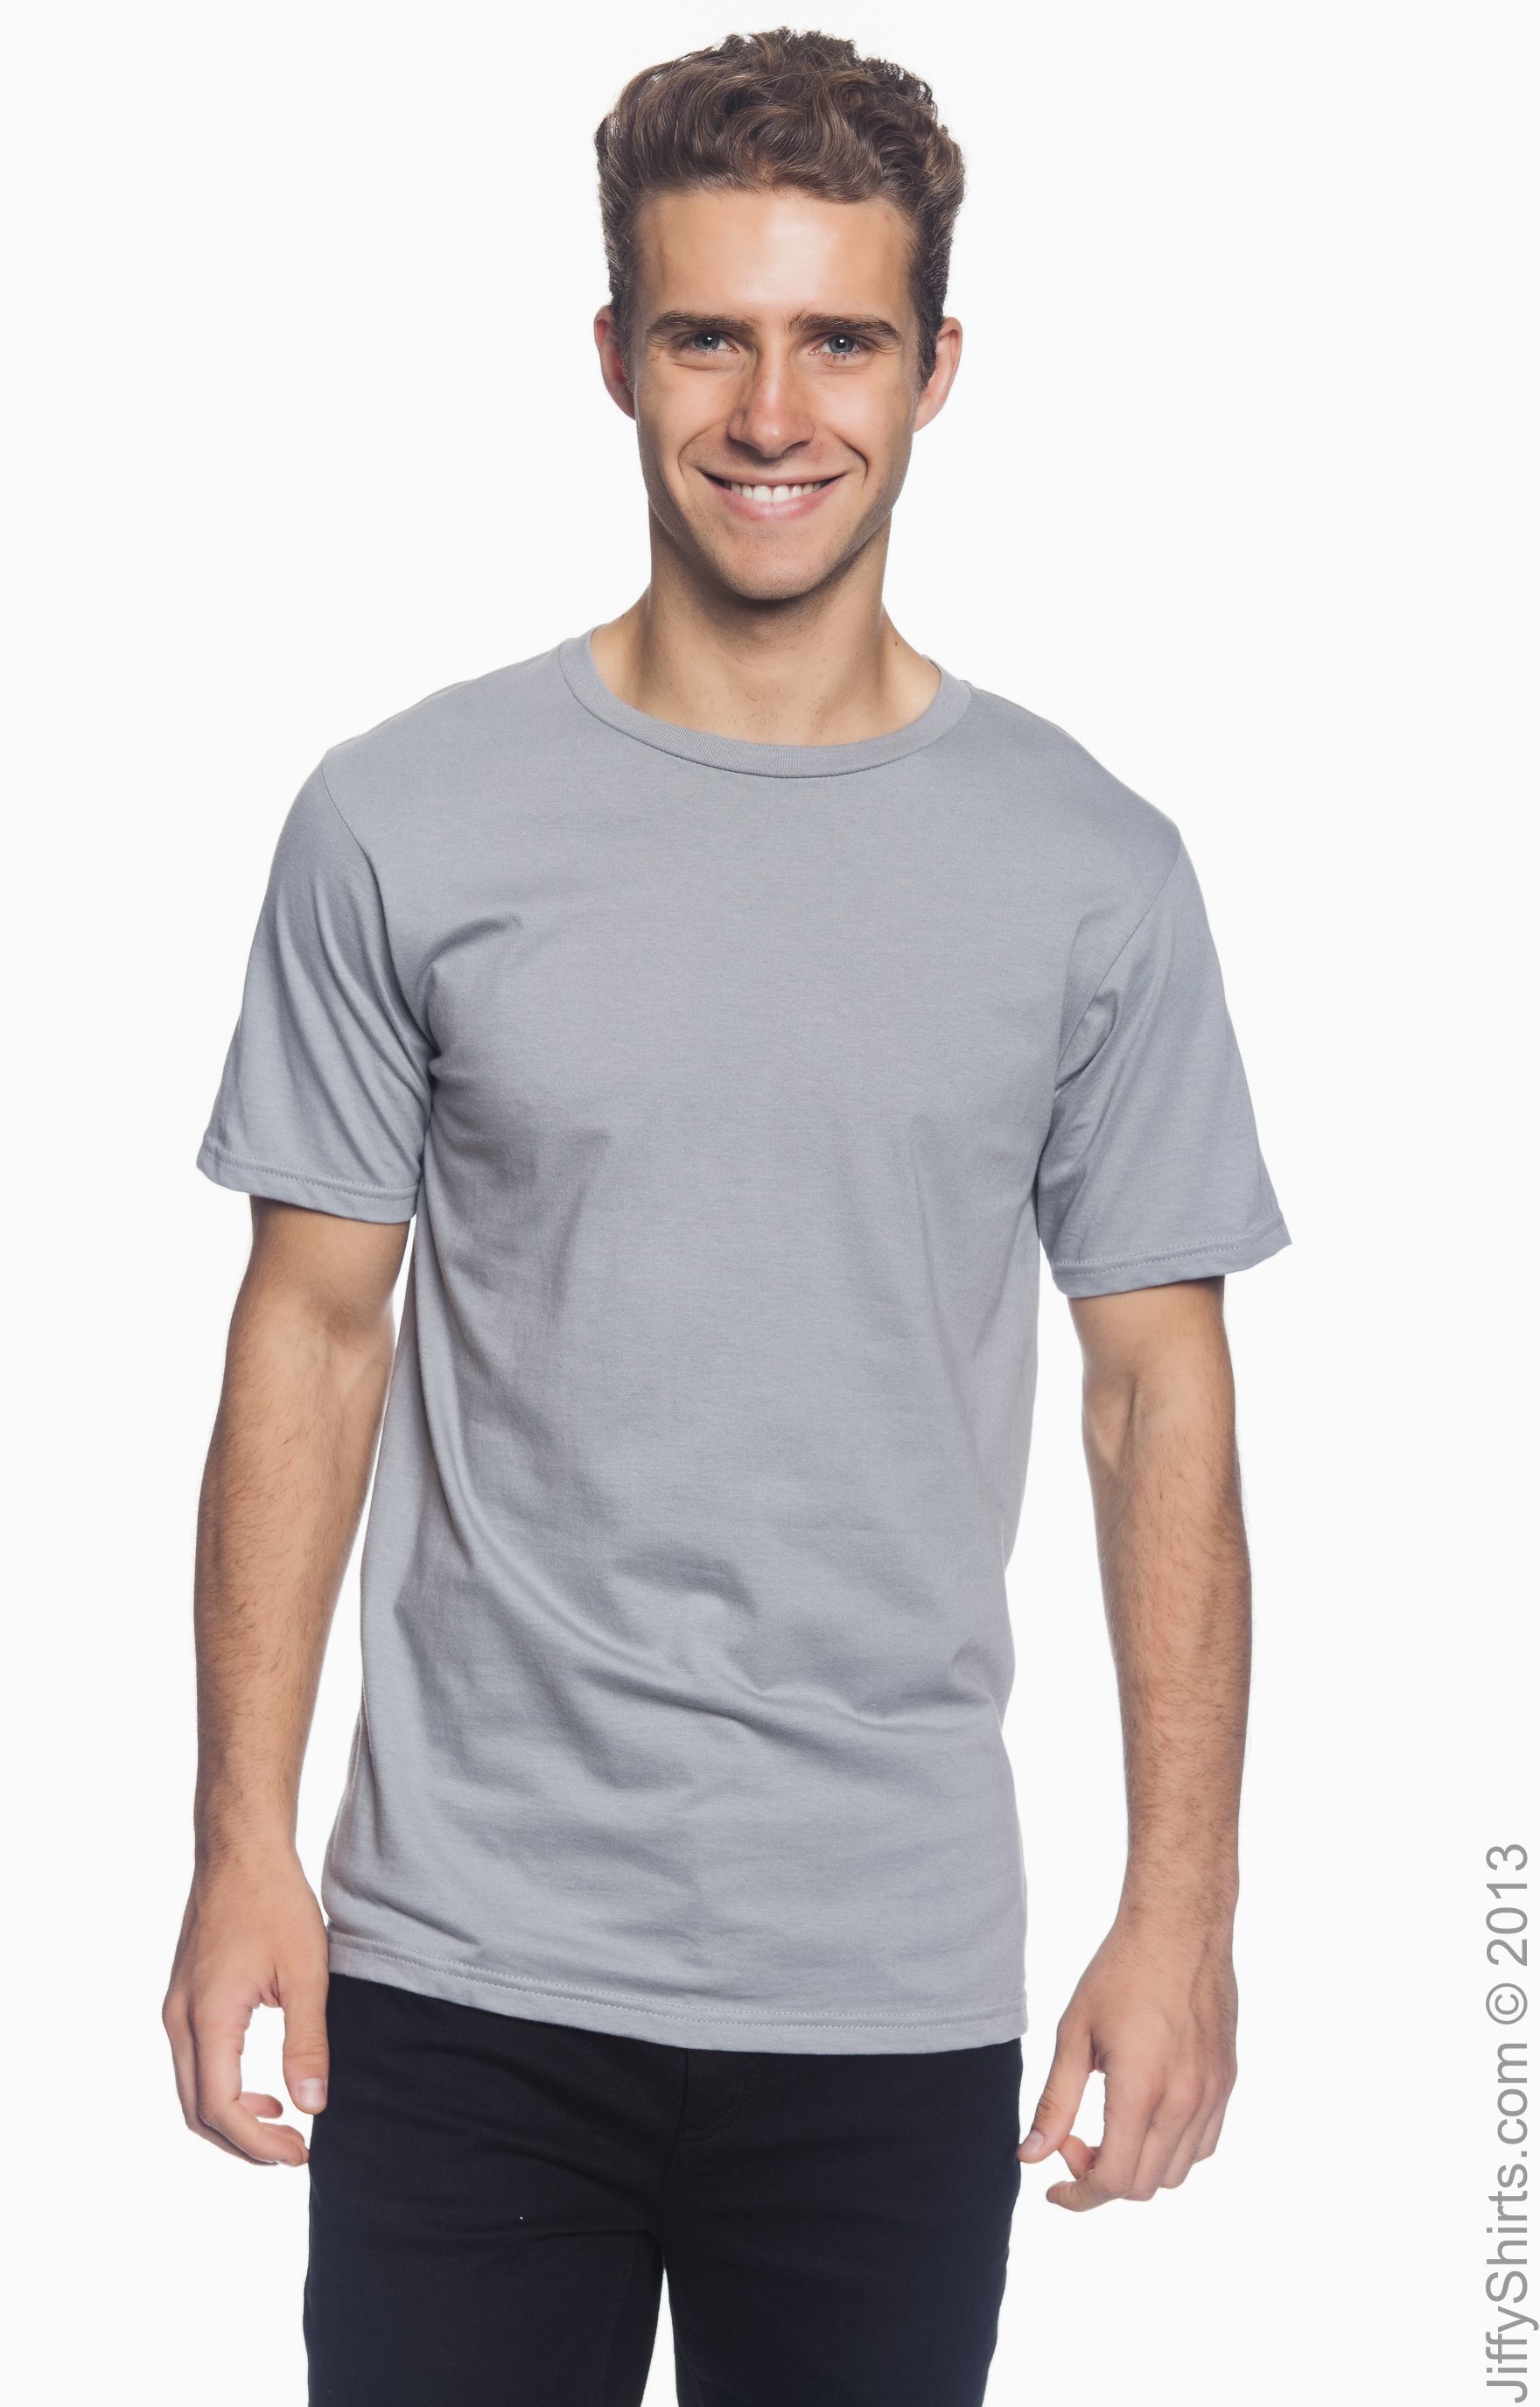 anvil 980 lightweight t shirt